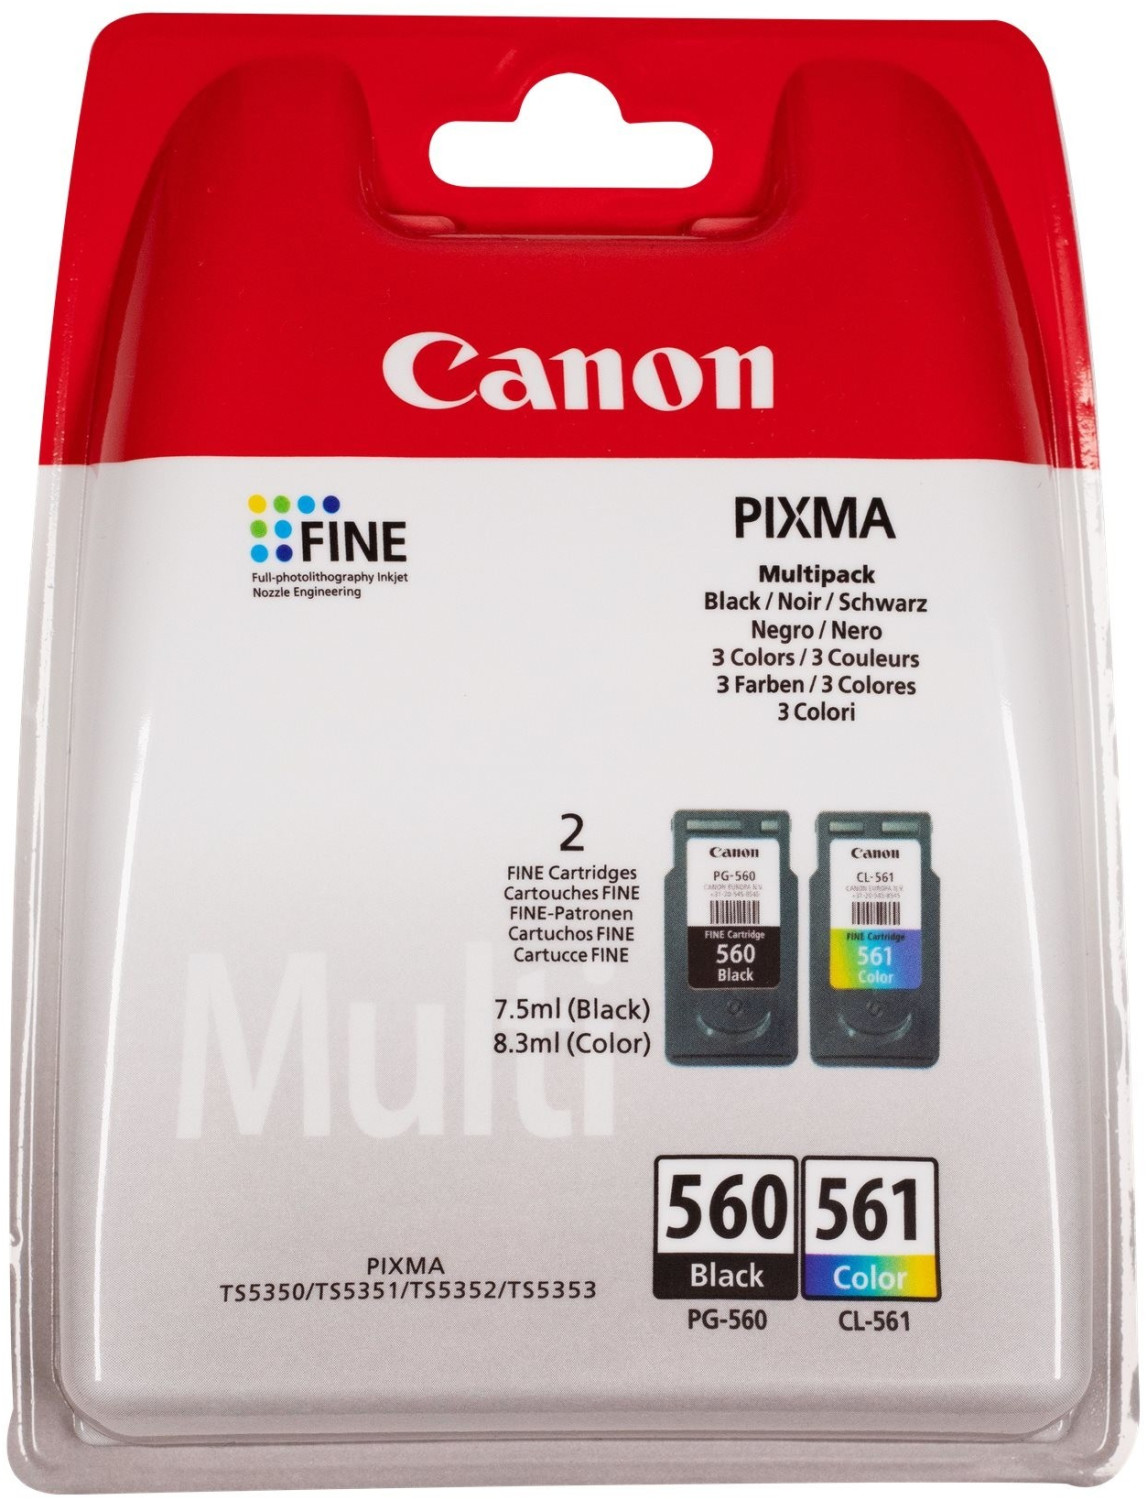 Canon PG-560/CL-561 32,37 + € bei schwarz Preisvergleich ab color 